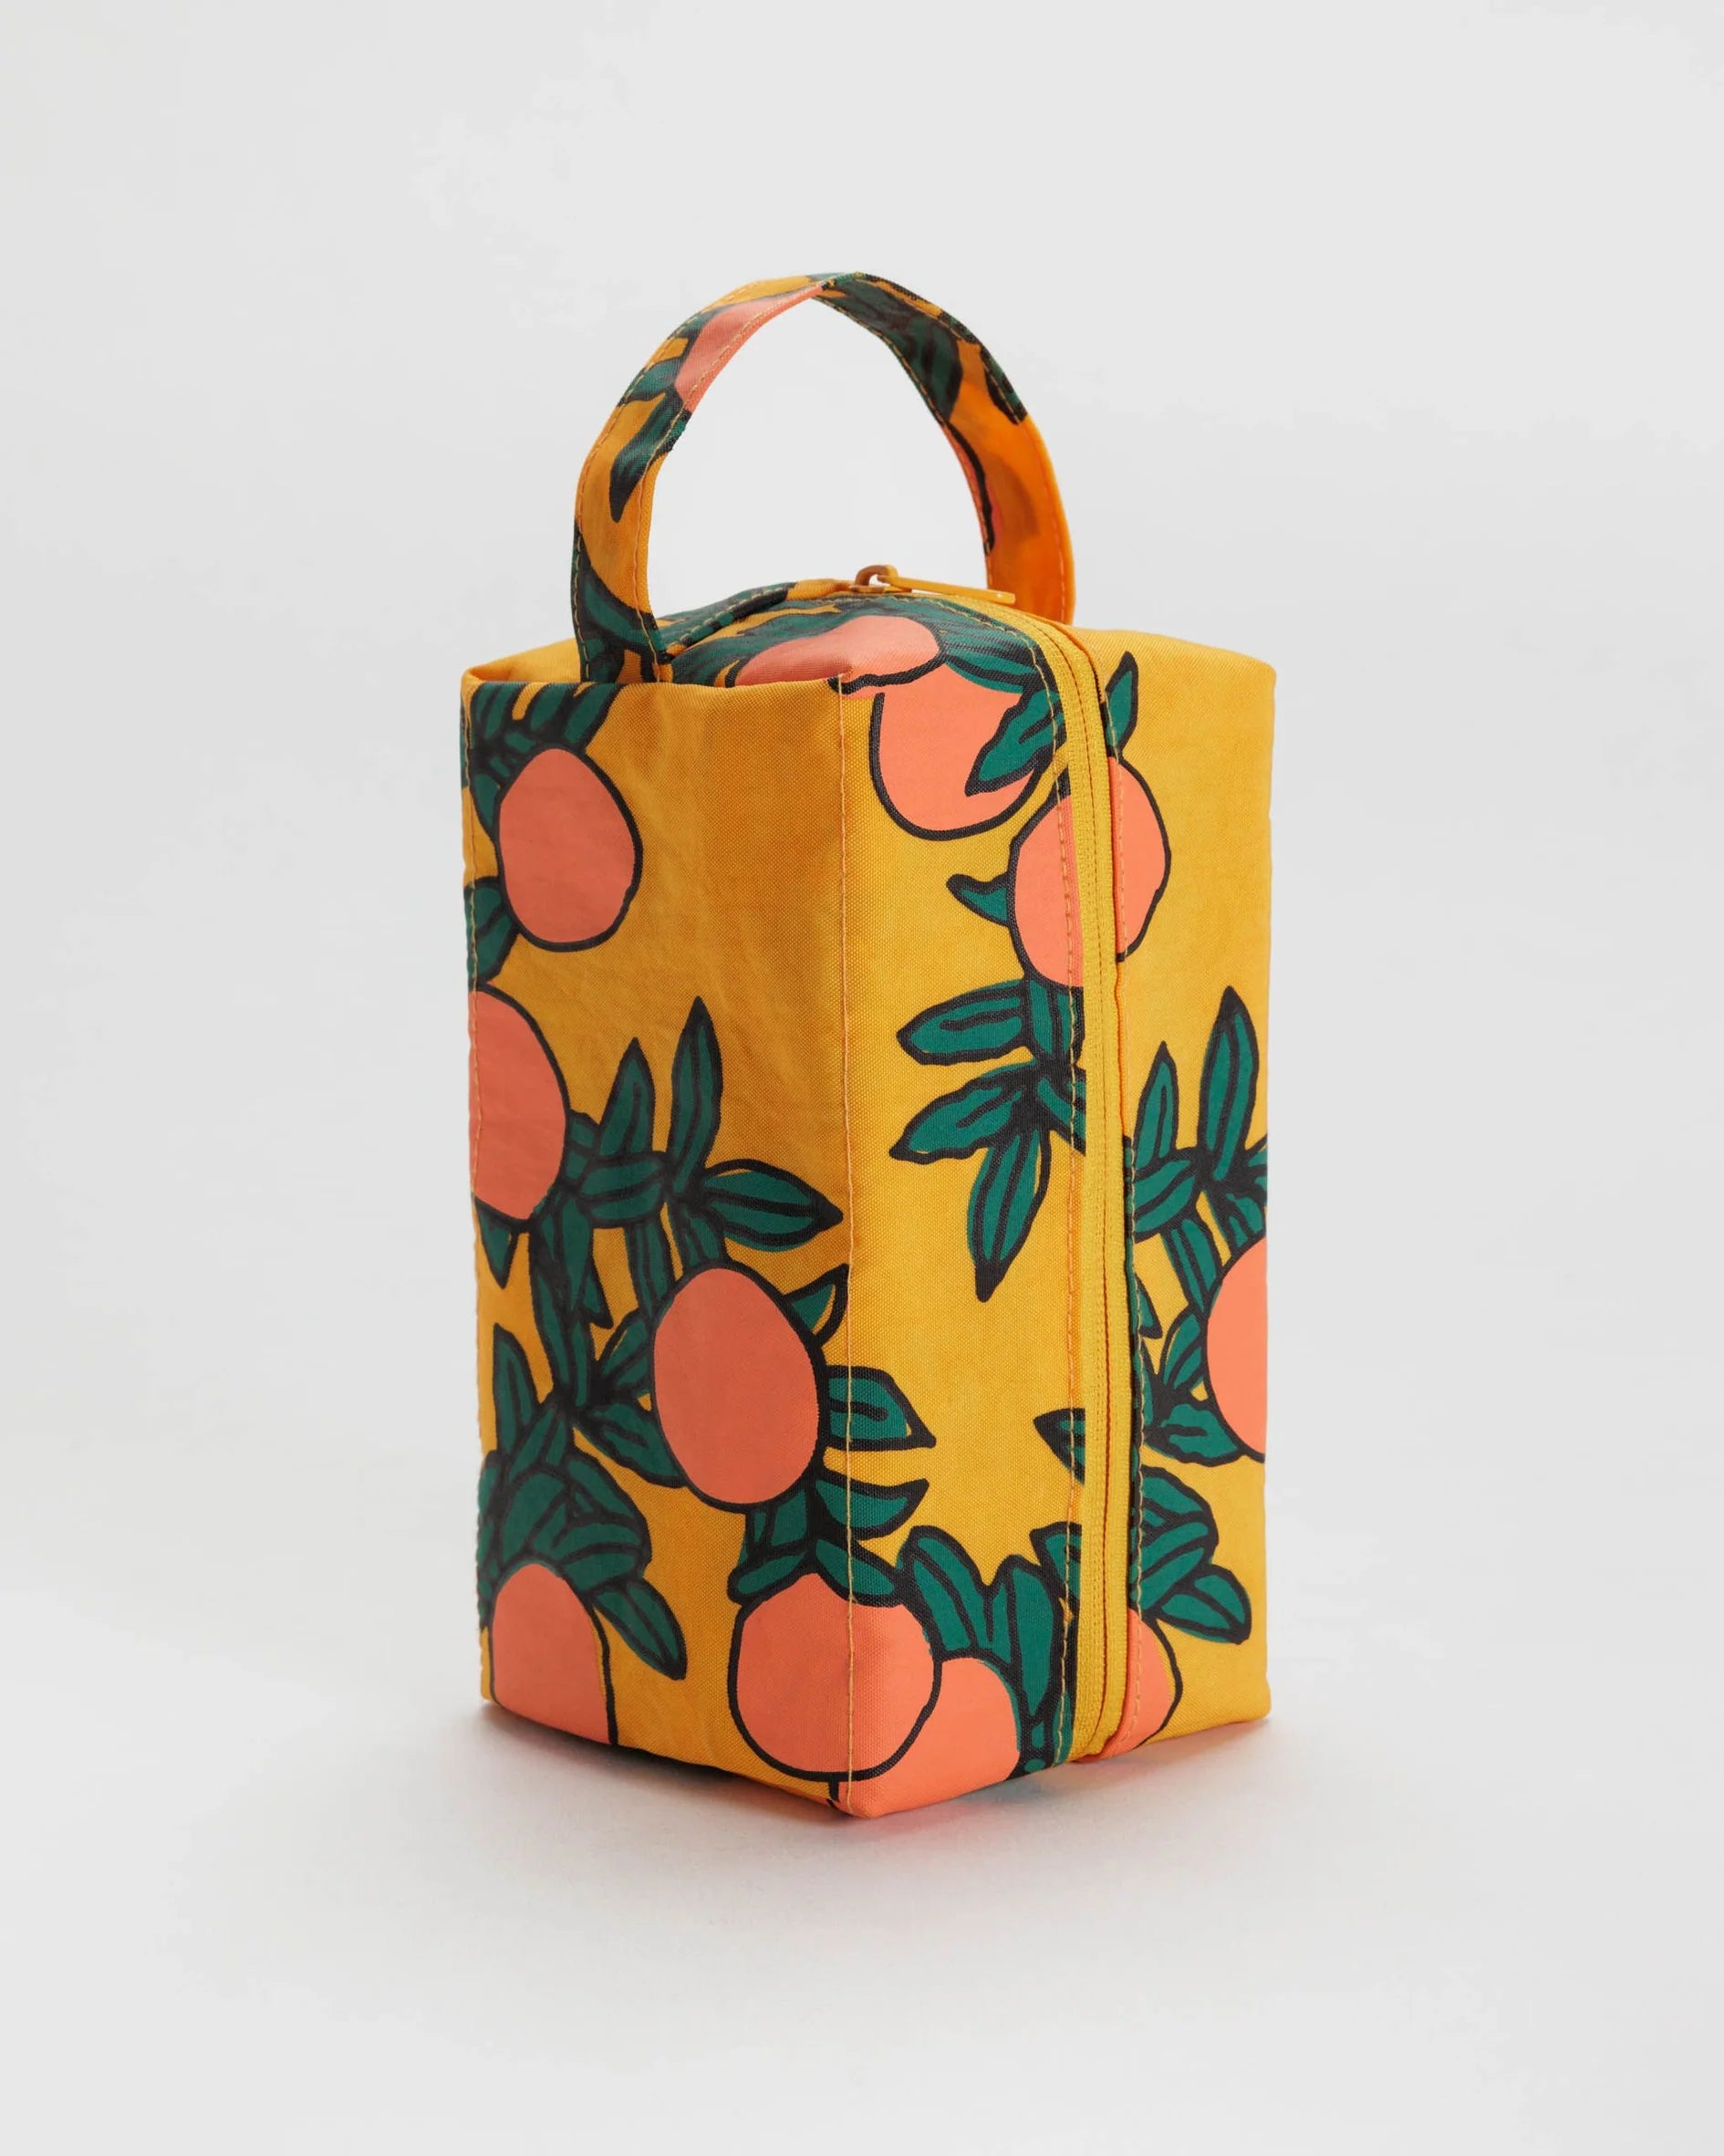 BAGGU Dopp kit bag in orange tree